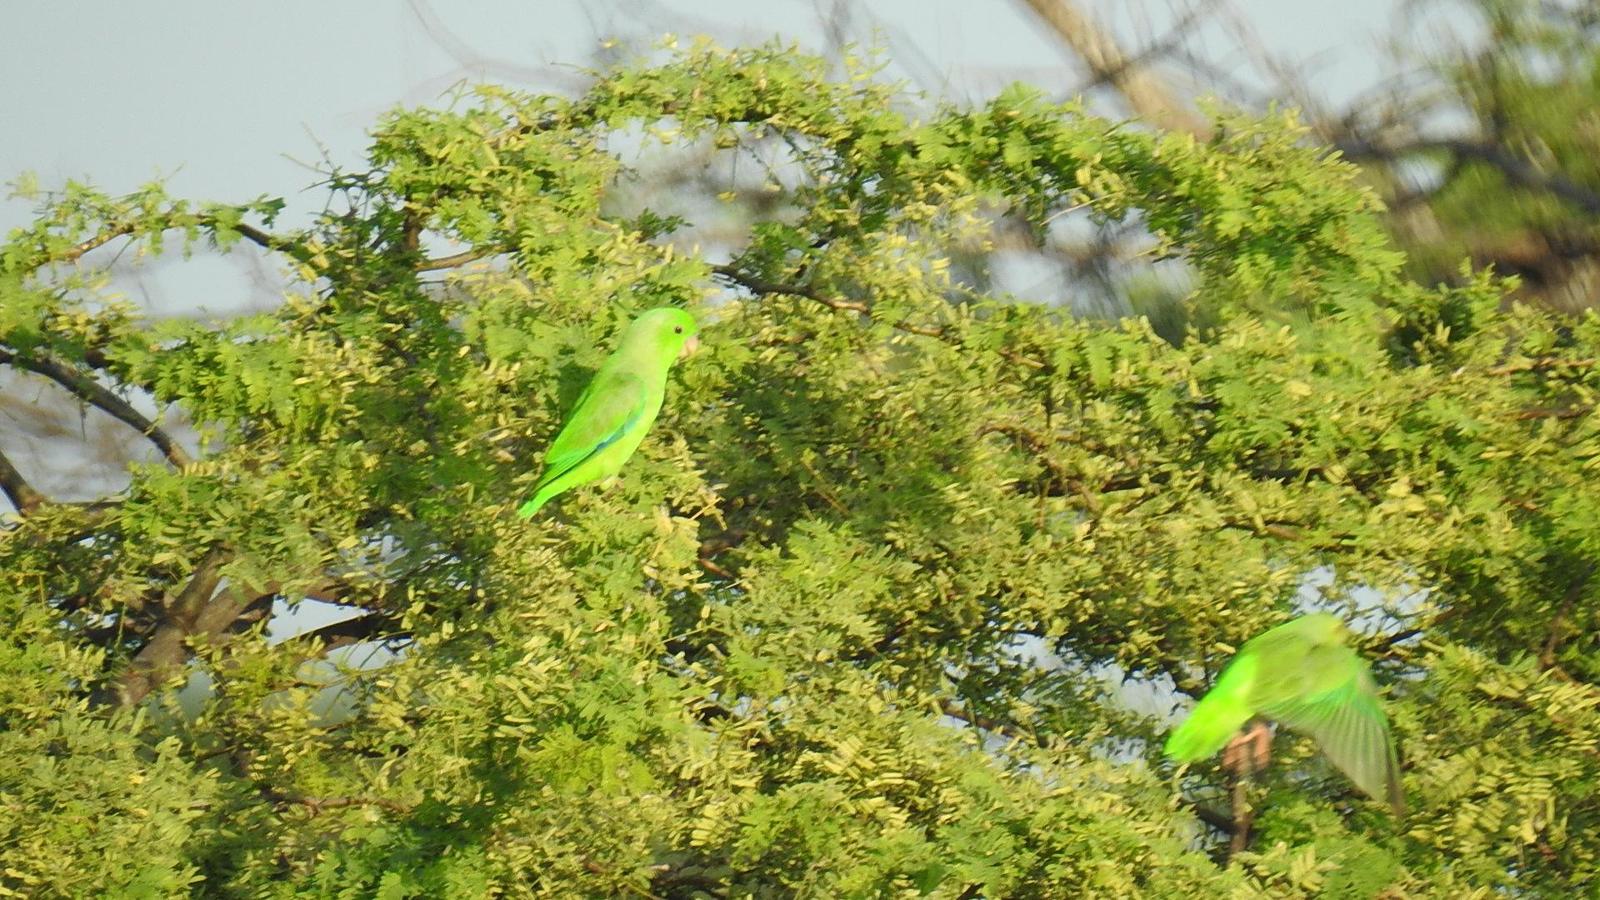 Green-rumped Parrotlet Photo by Julio Delgado